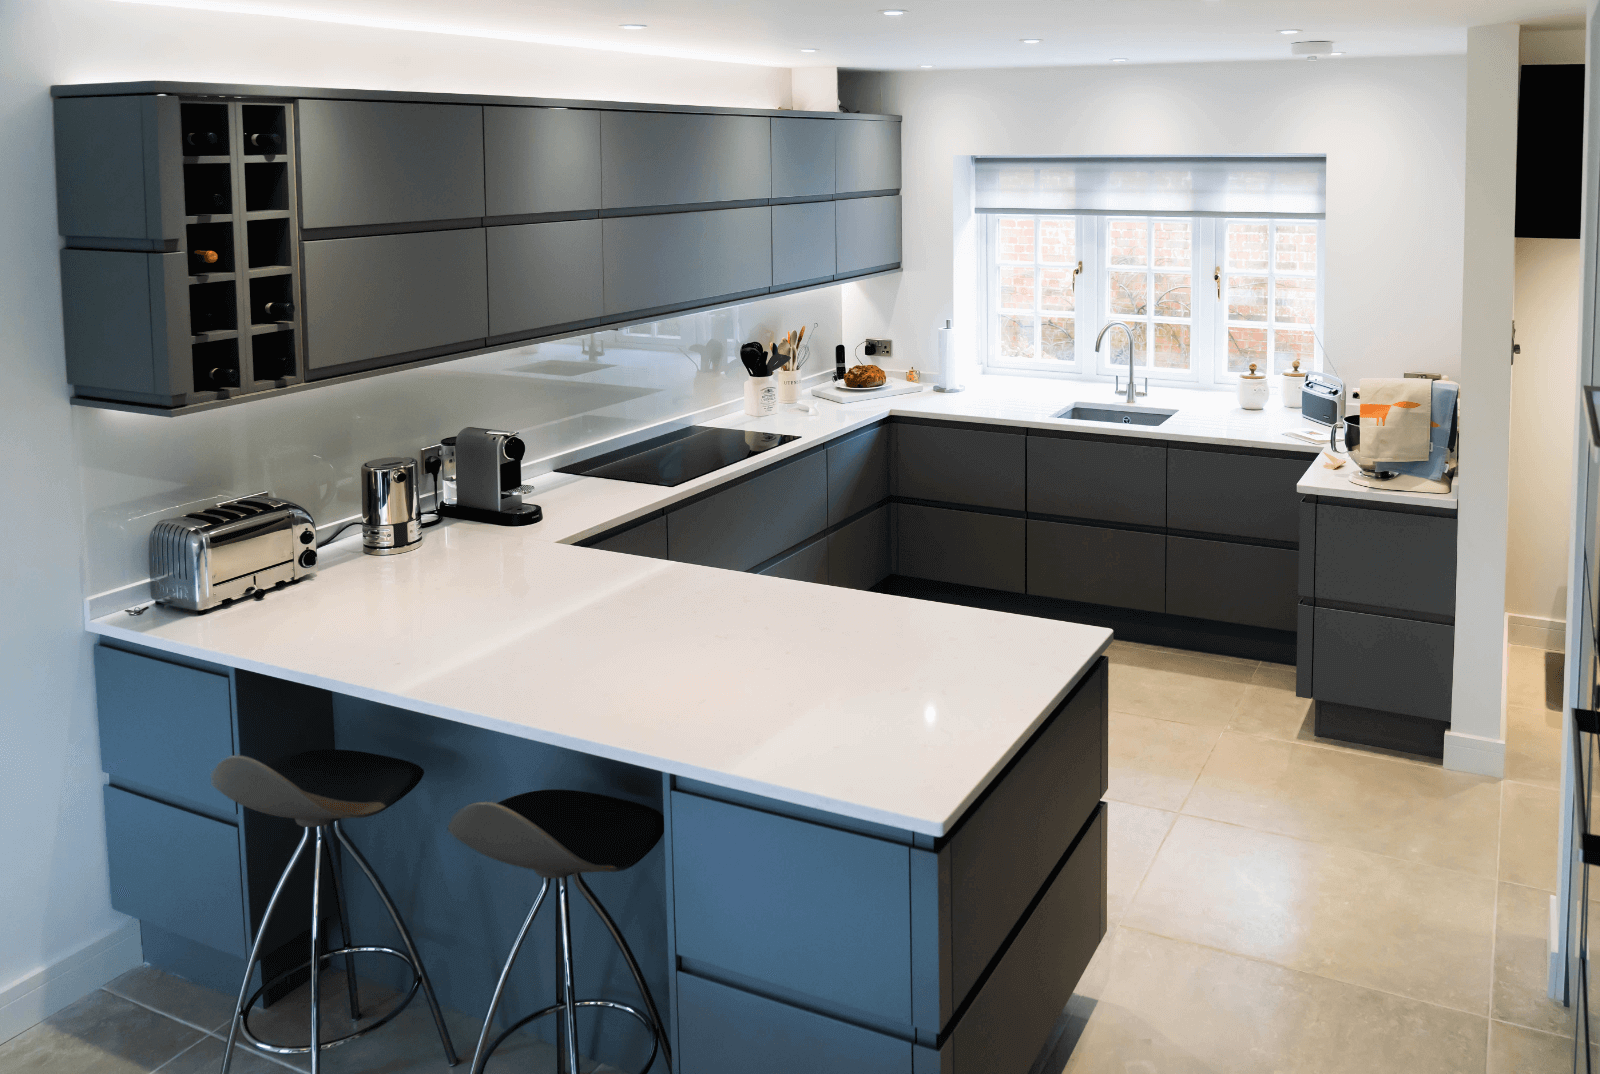 Modern kitchen design and architecture.